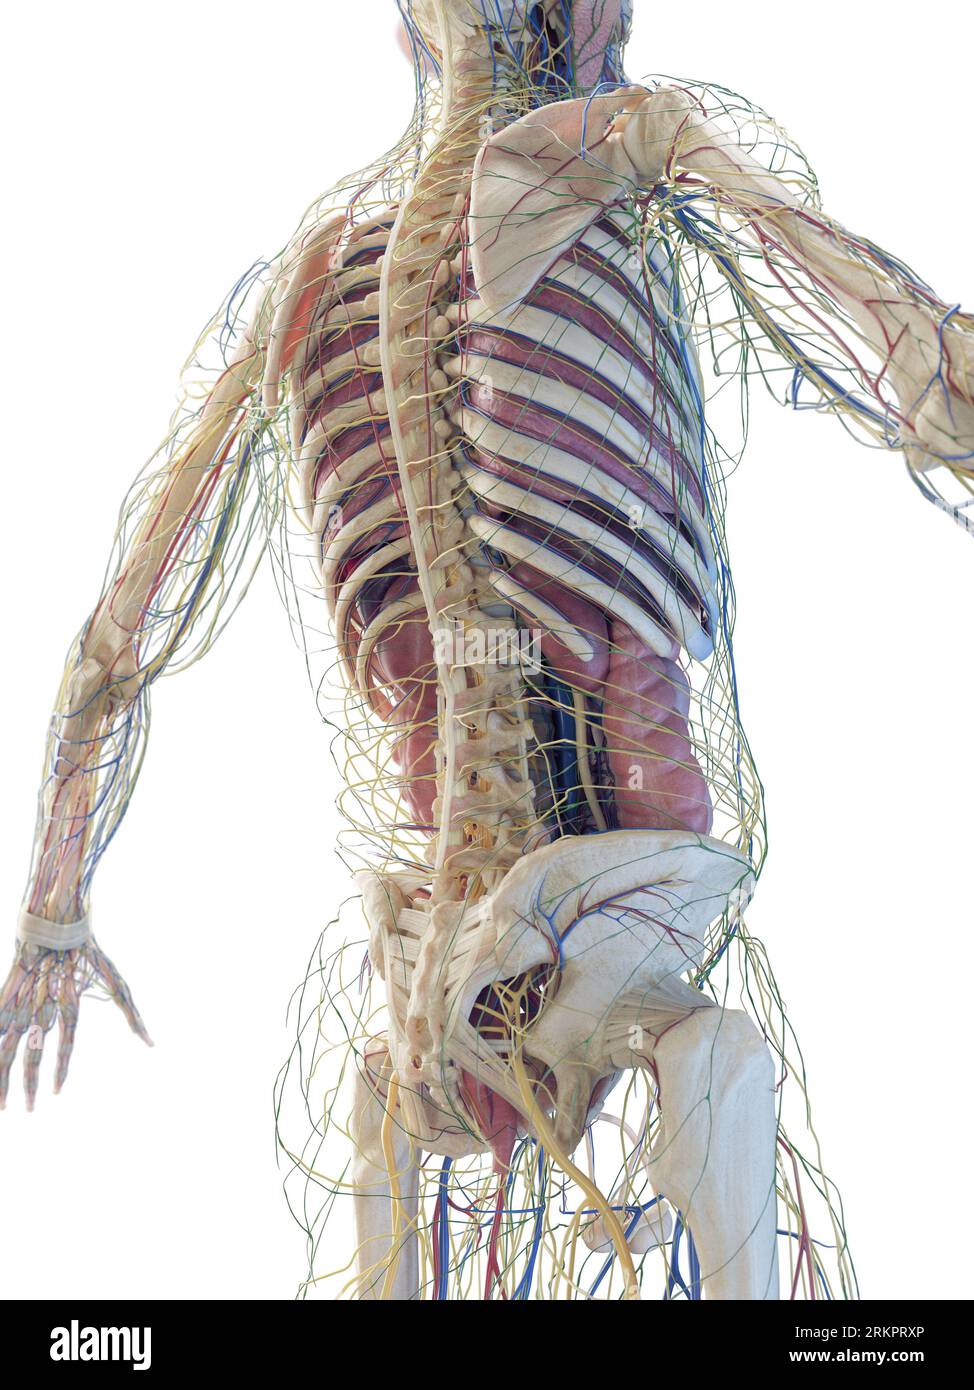 Human anatomy, illustration. Stock Photo